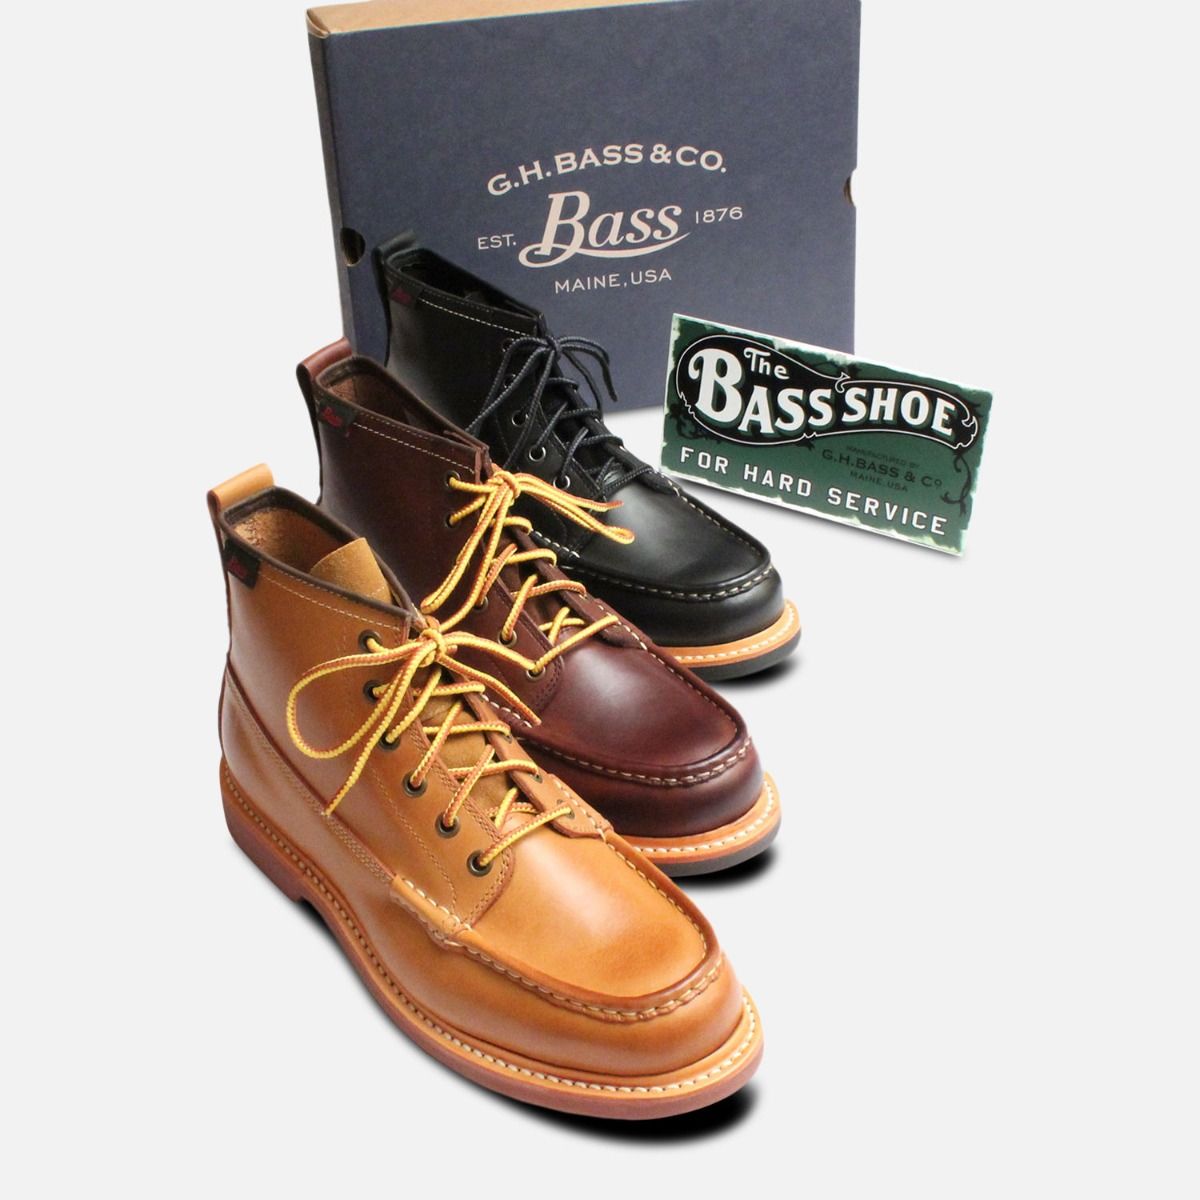 bass brand boots